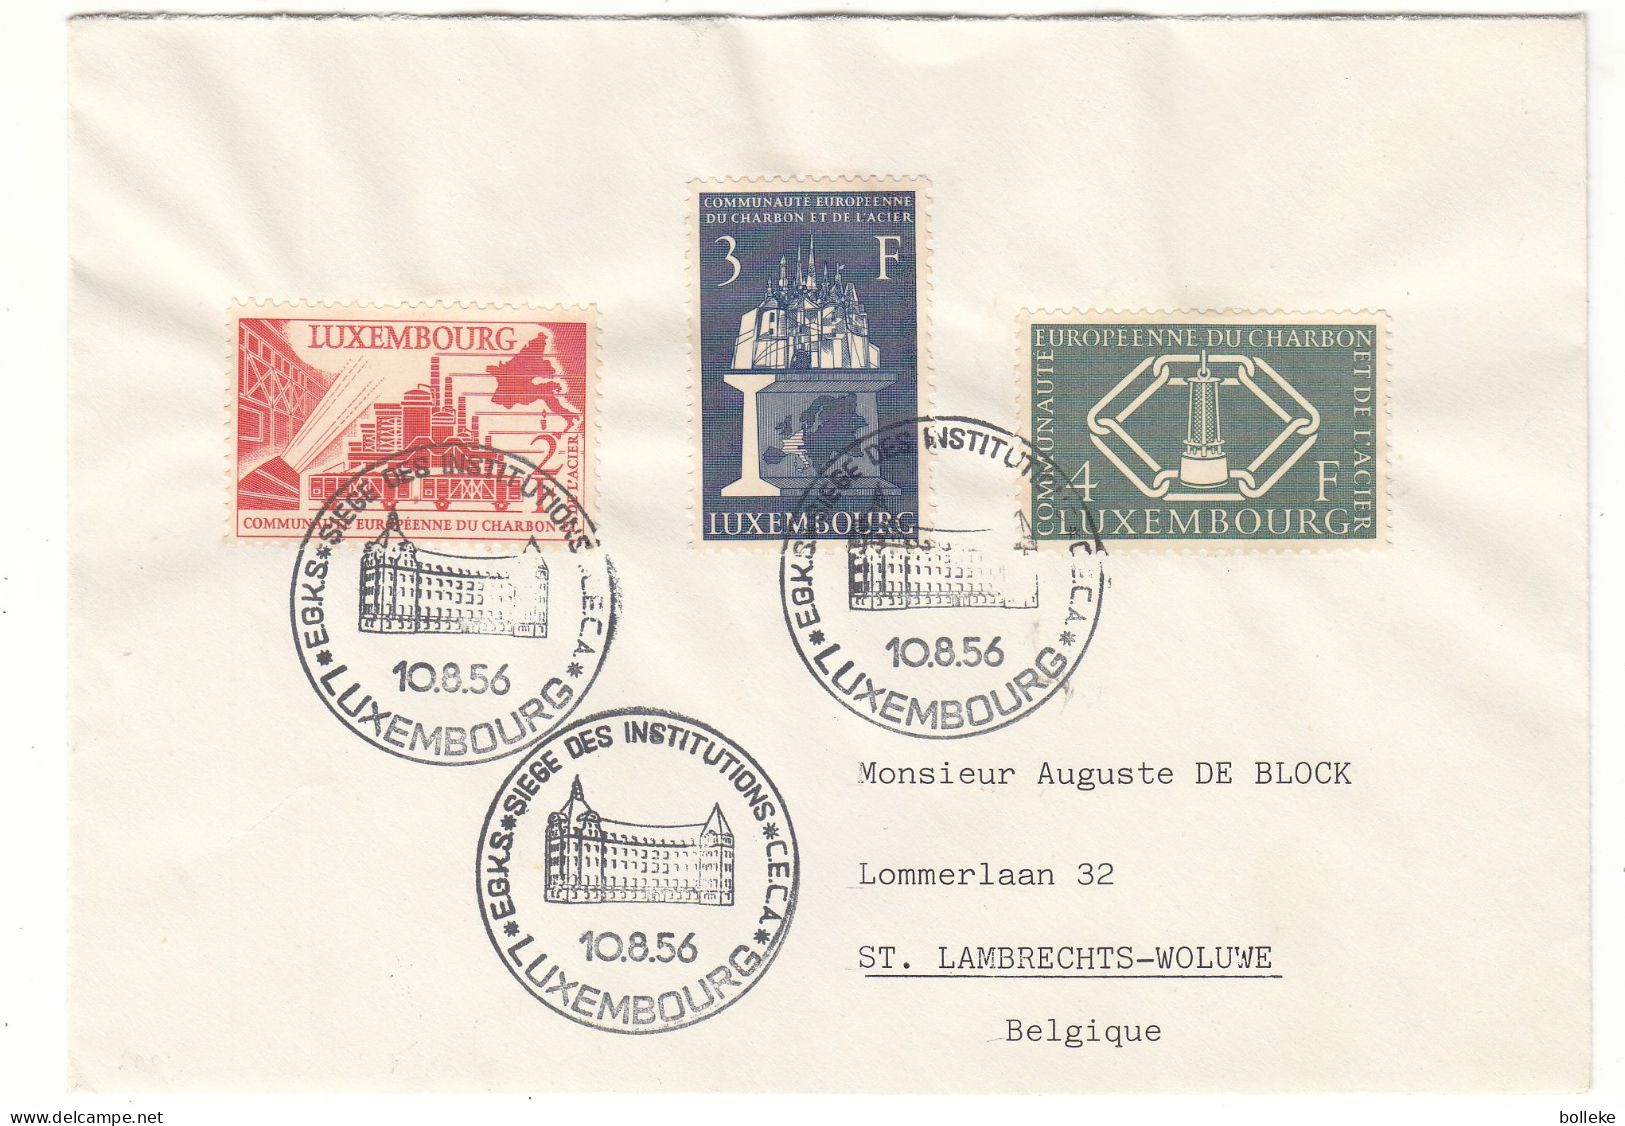 Luxembourg - Lettre De 1956 - Oblit Luxembourg - Idées Européennes - Charbon & Acier - Valeur 35 Euros - Lettres & Documents